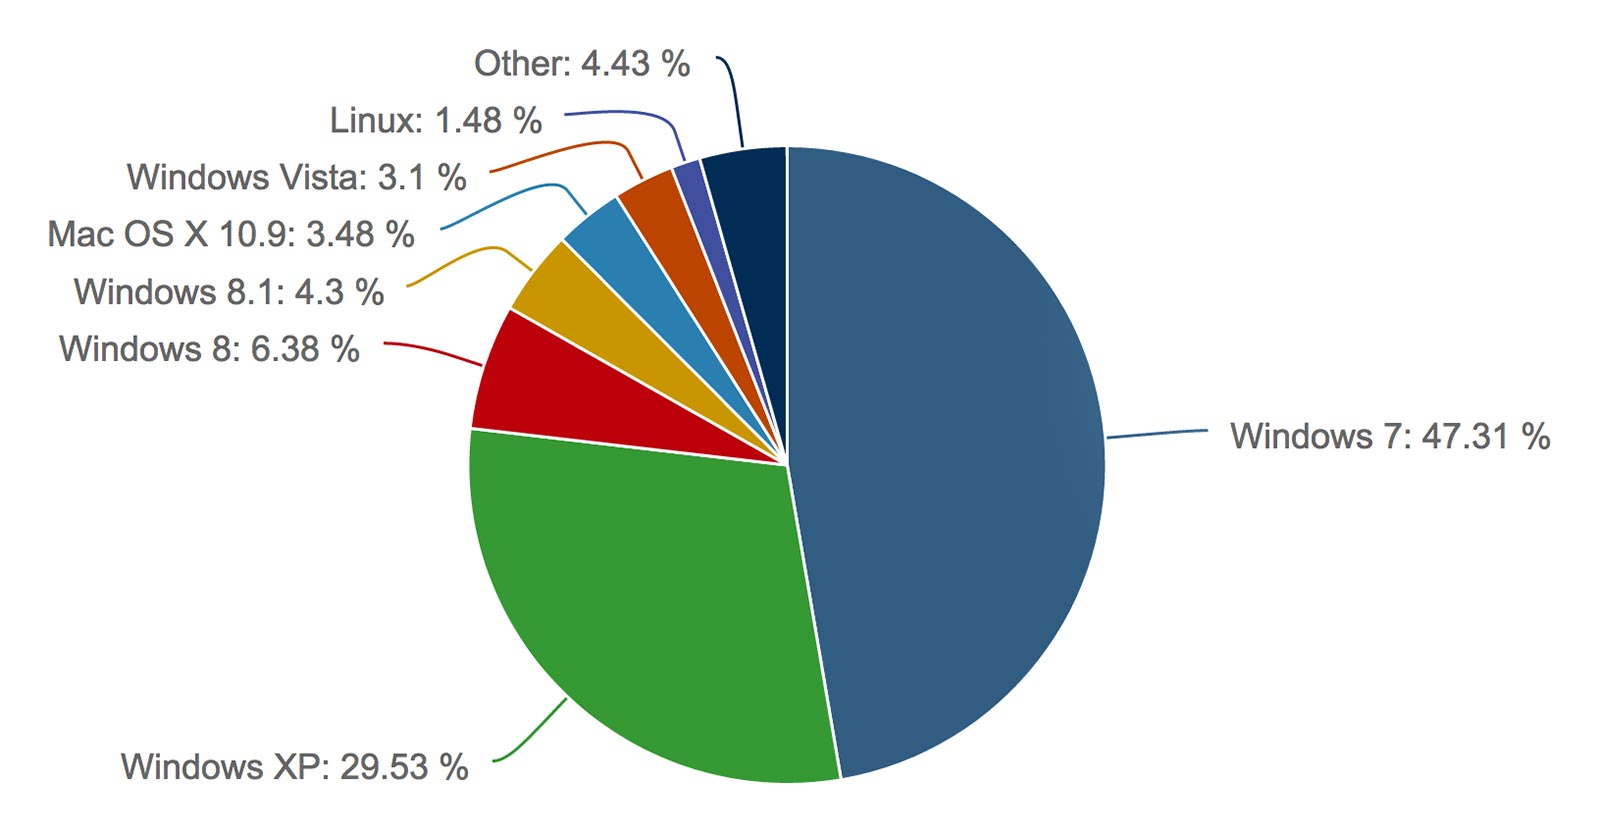 Les parts de marché des systèmes d'exploitation selon Net Applications (excluant les appareils mobiles)